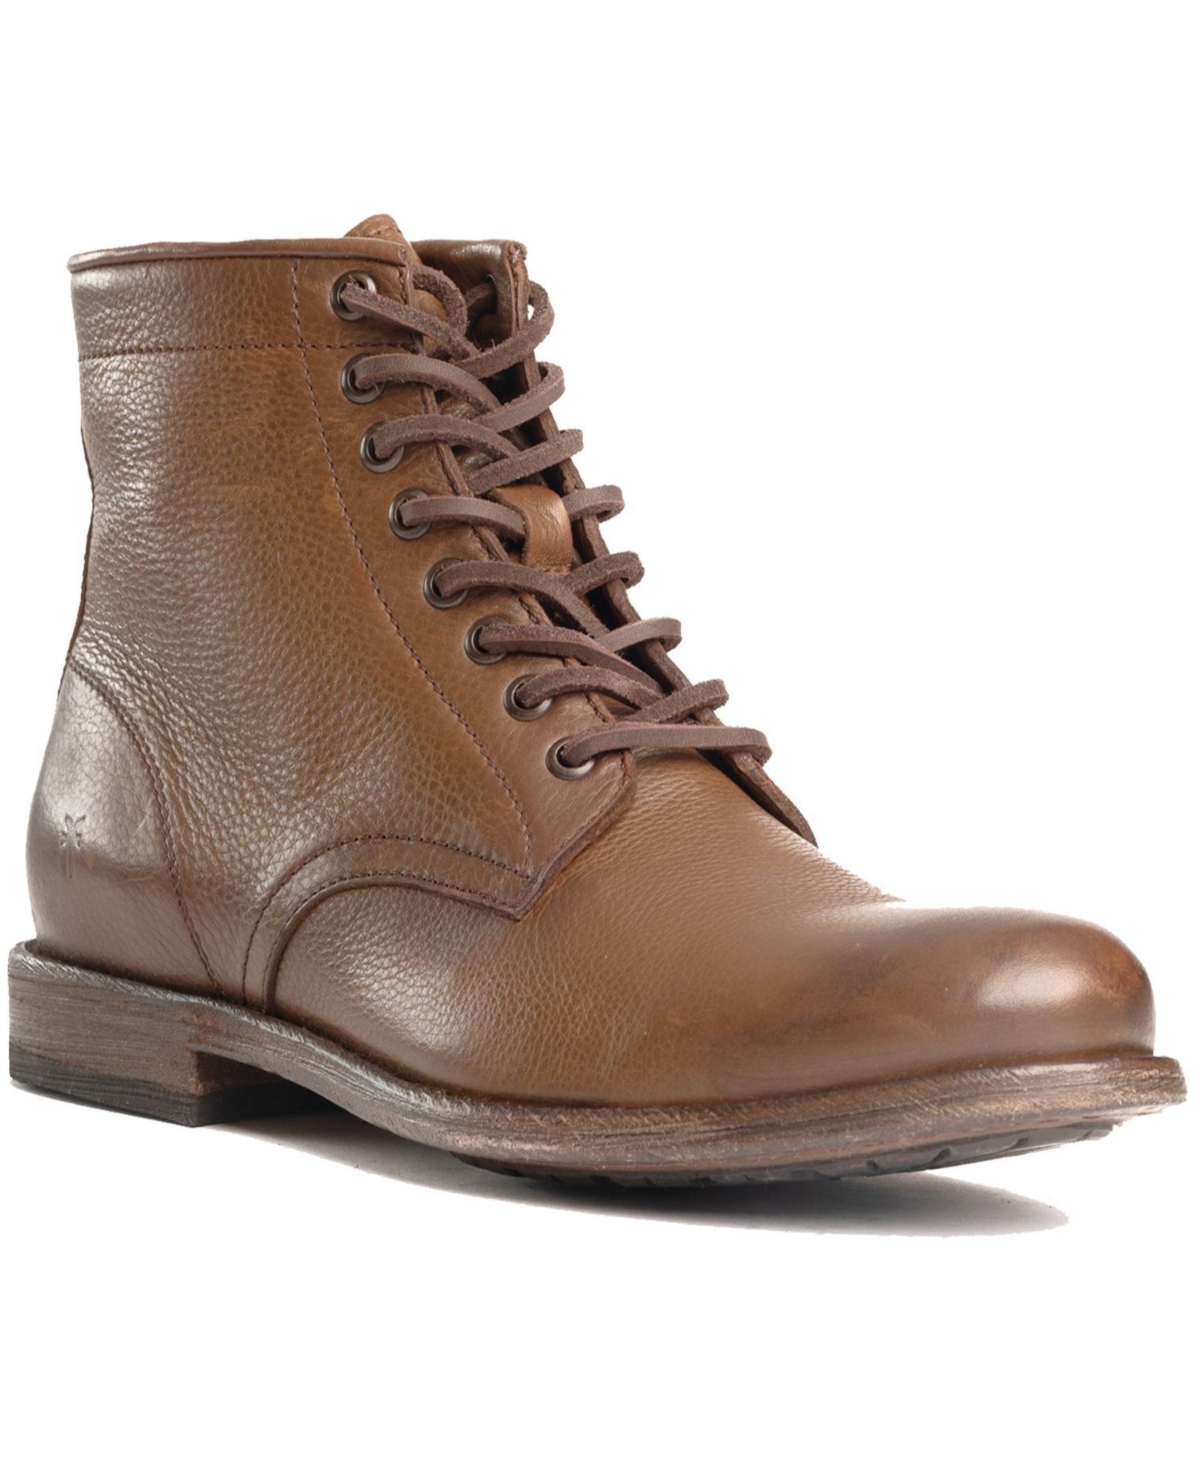 Men's Tyler Lace up Boots - Cognac Leather